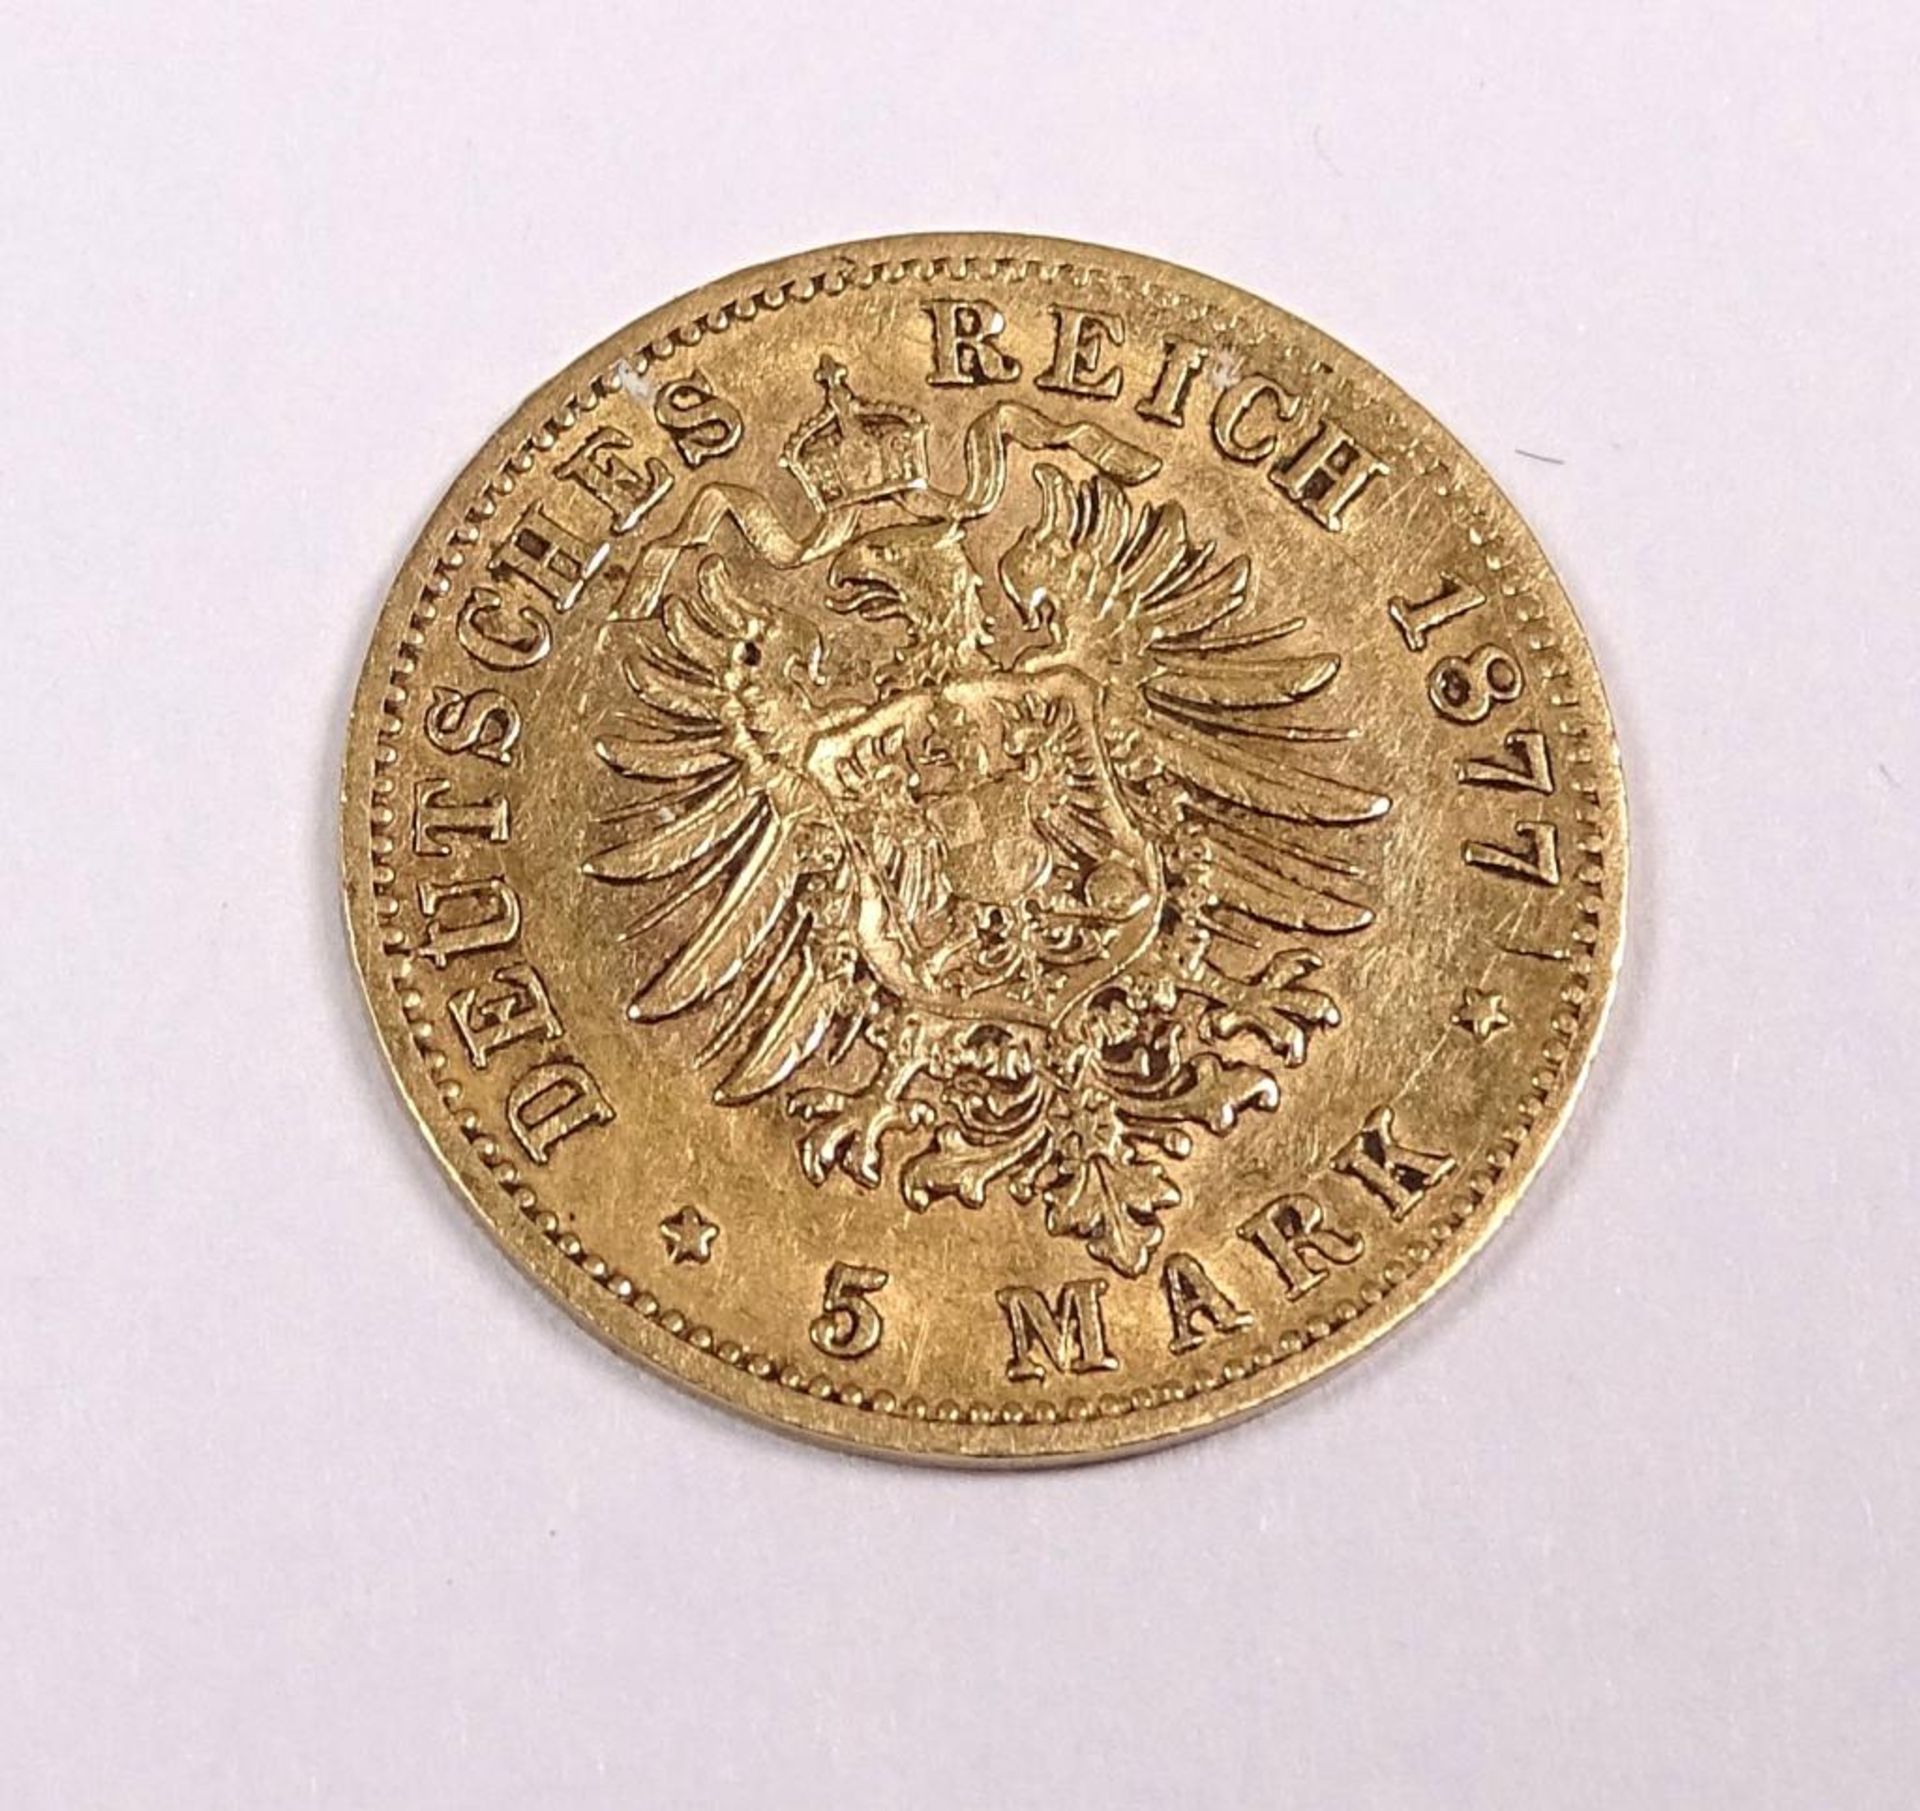 Selten! Goldmünze : 5 Mark 1877 F , Karl König v. Wuerttemberg,Deutsches Reich, 900/000, d-17mm, 1, - Bild 2 aus 2